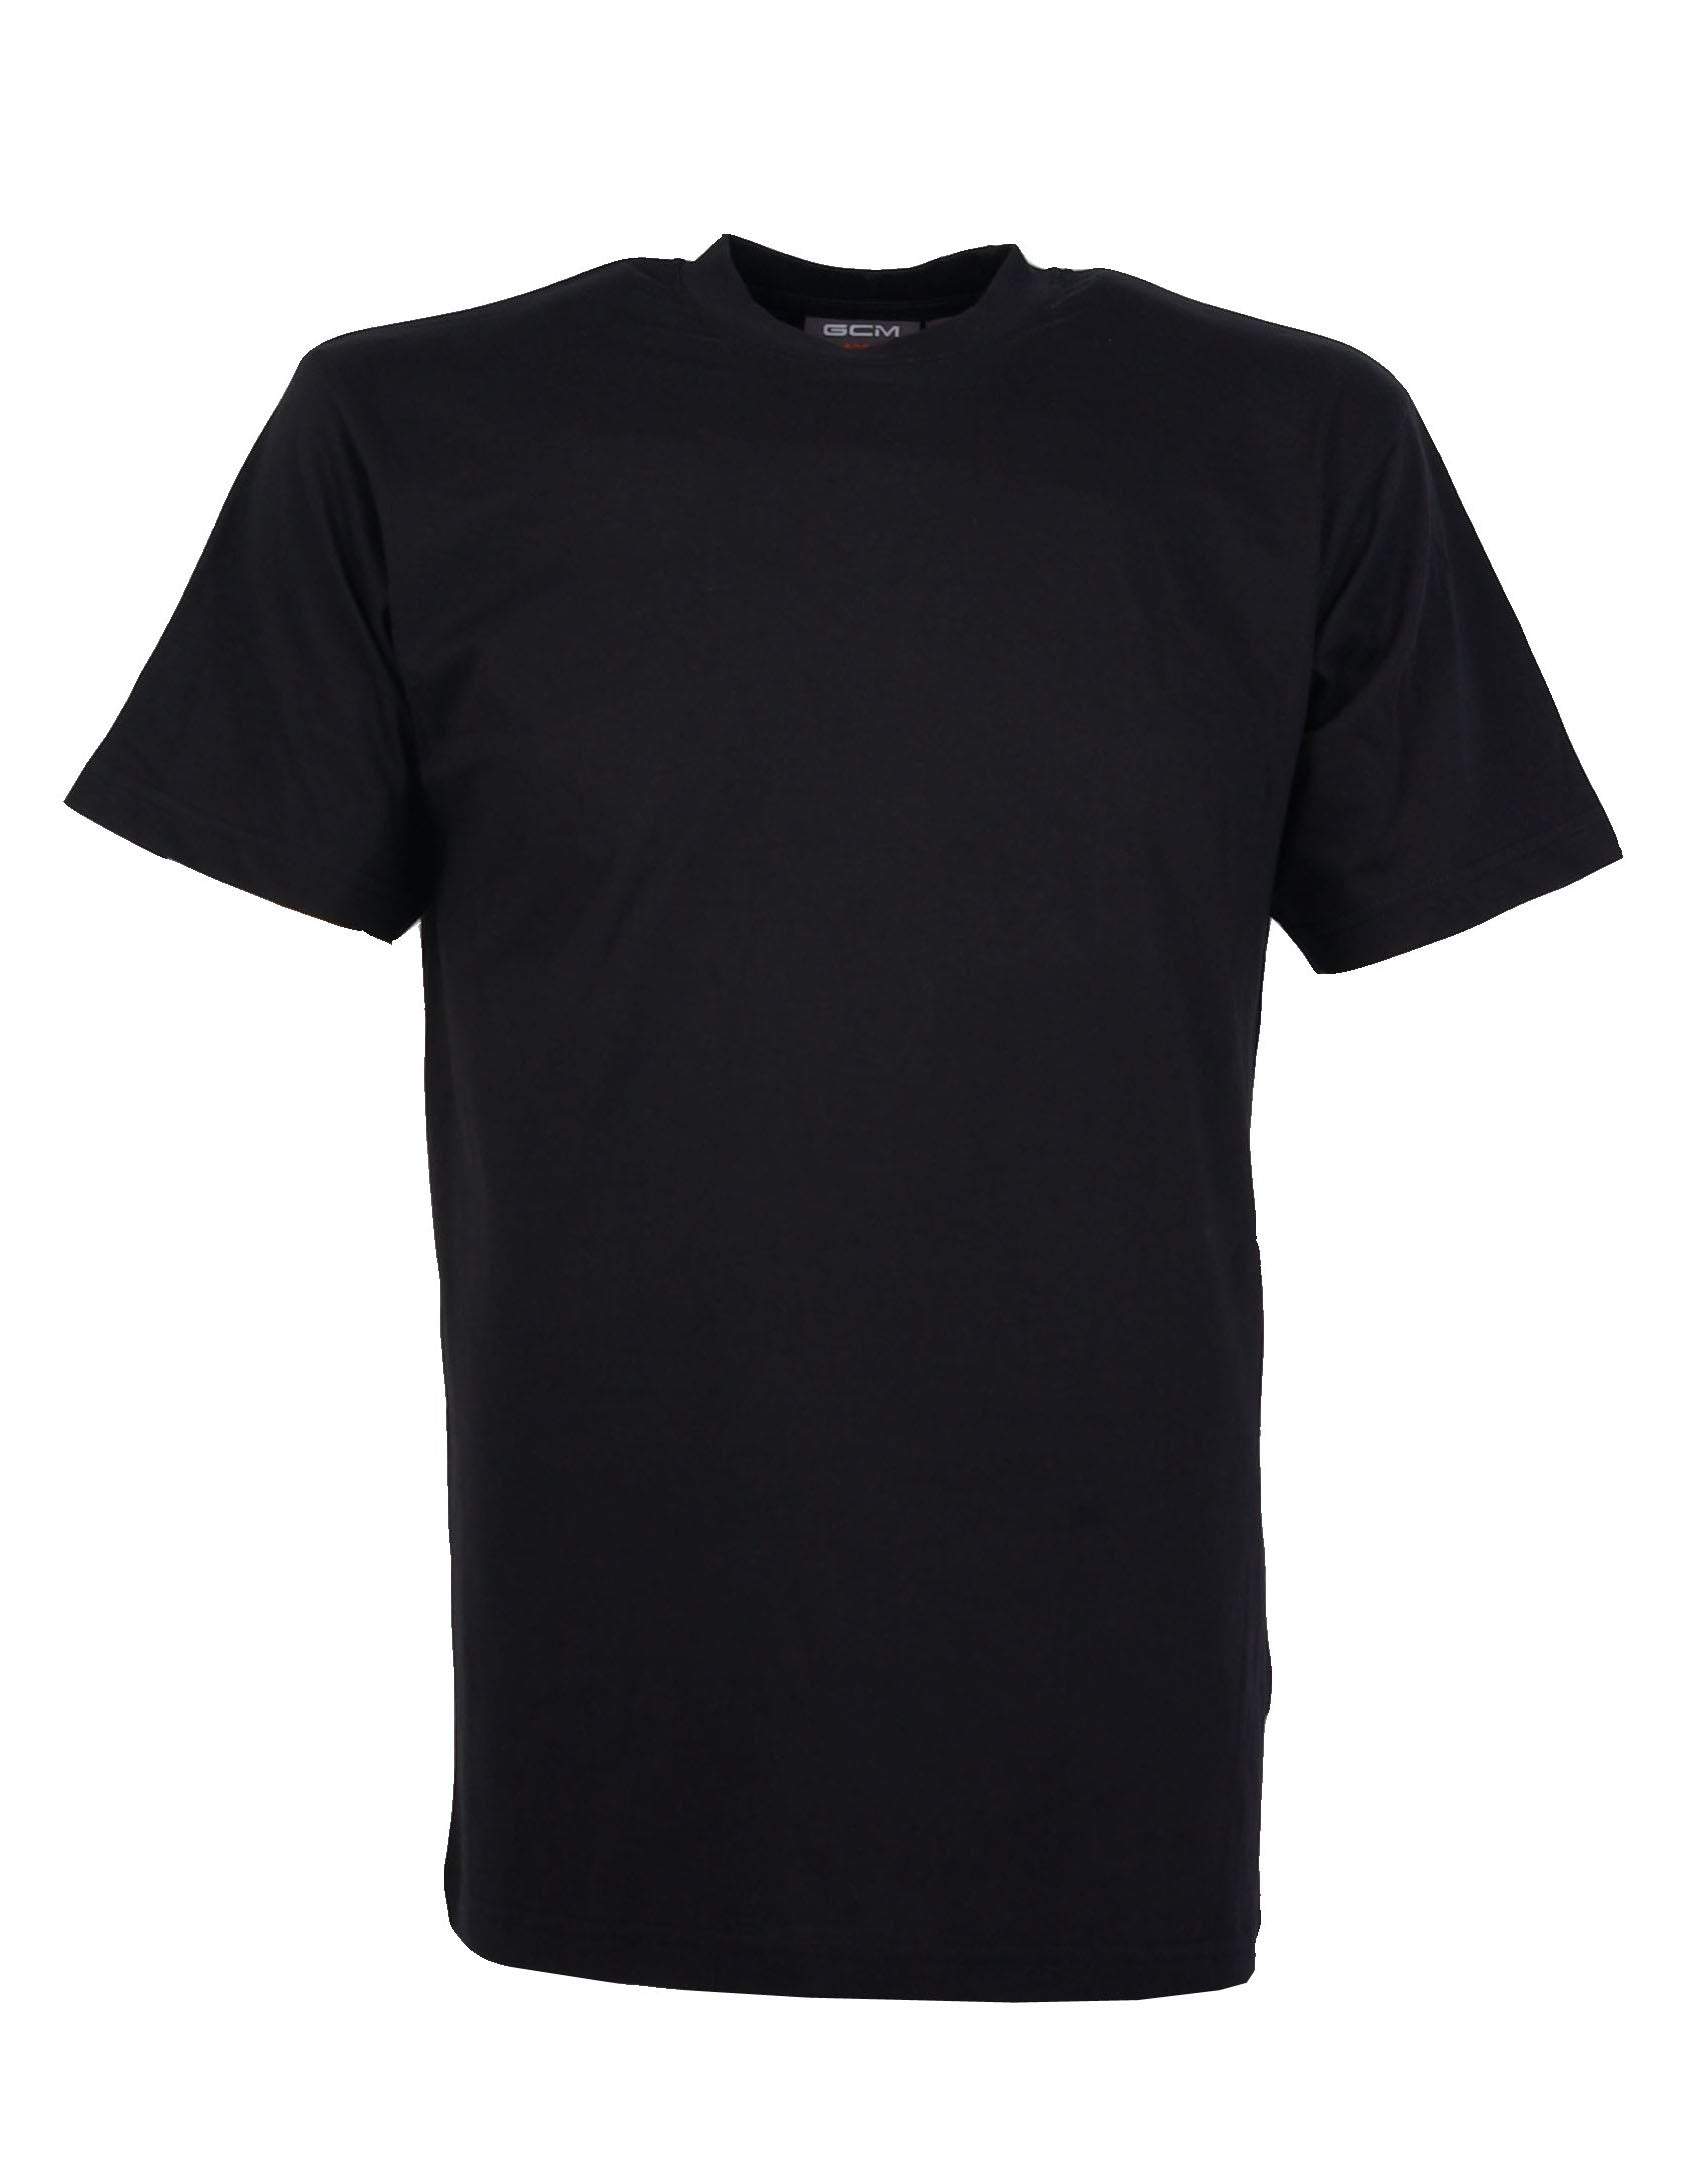 GCM original t-shirt ronde hals zwart-Broeken Binkie-Grote maten,grote maten kleding,Grote Maten tops,grote tops,Ronde hals,Shirts